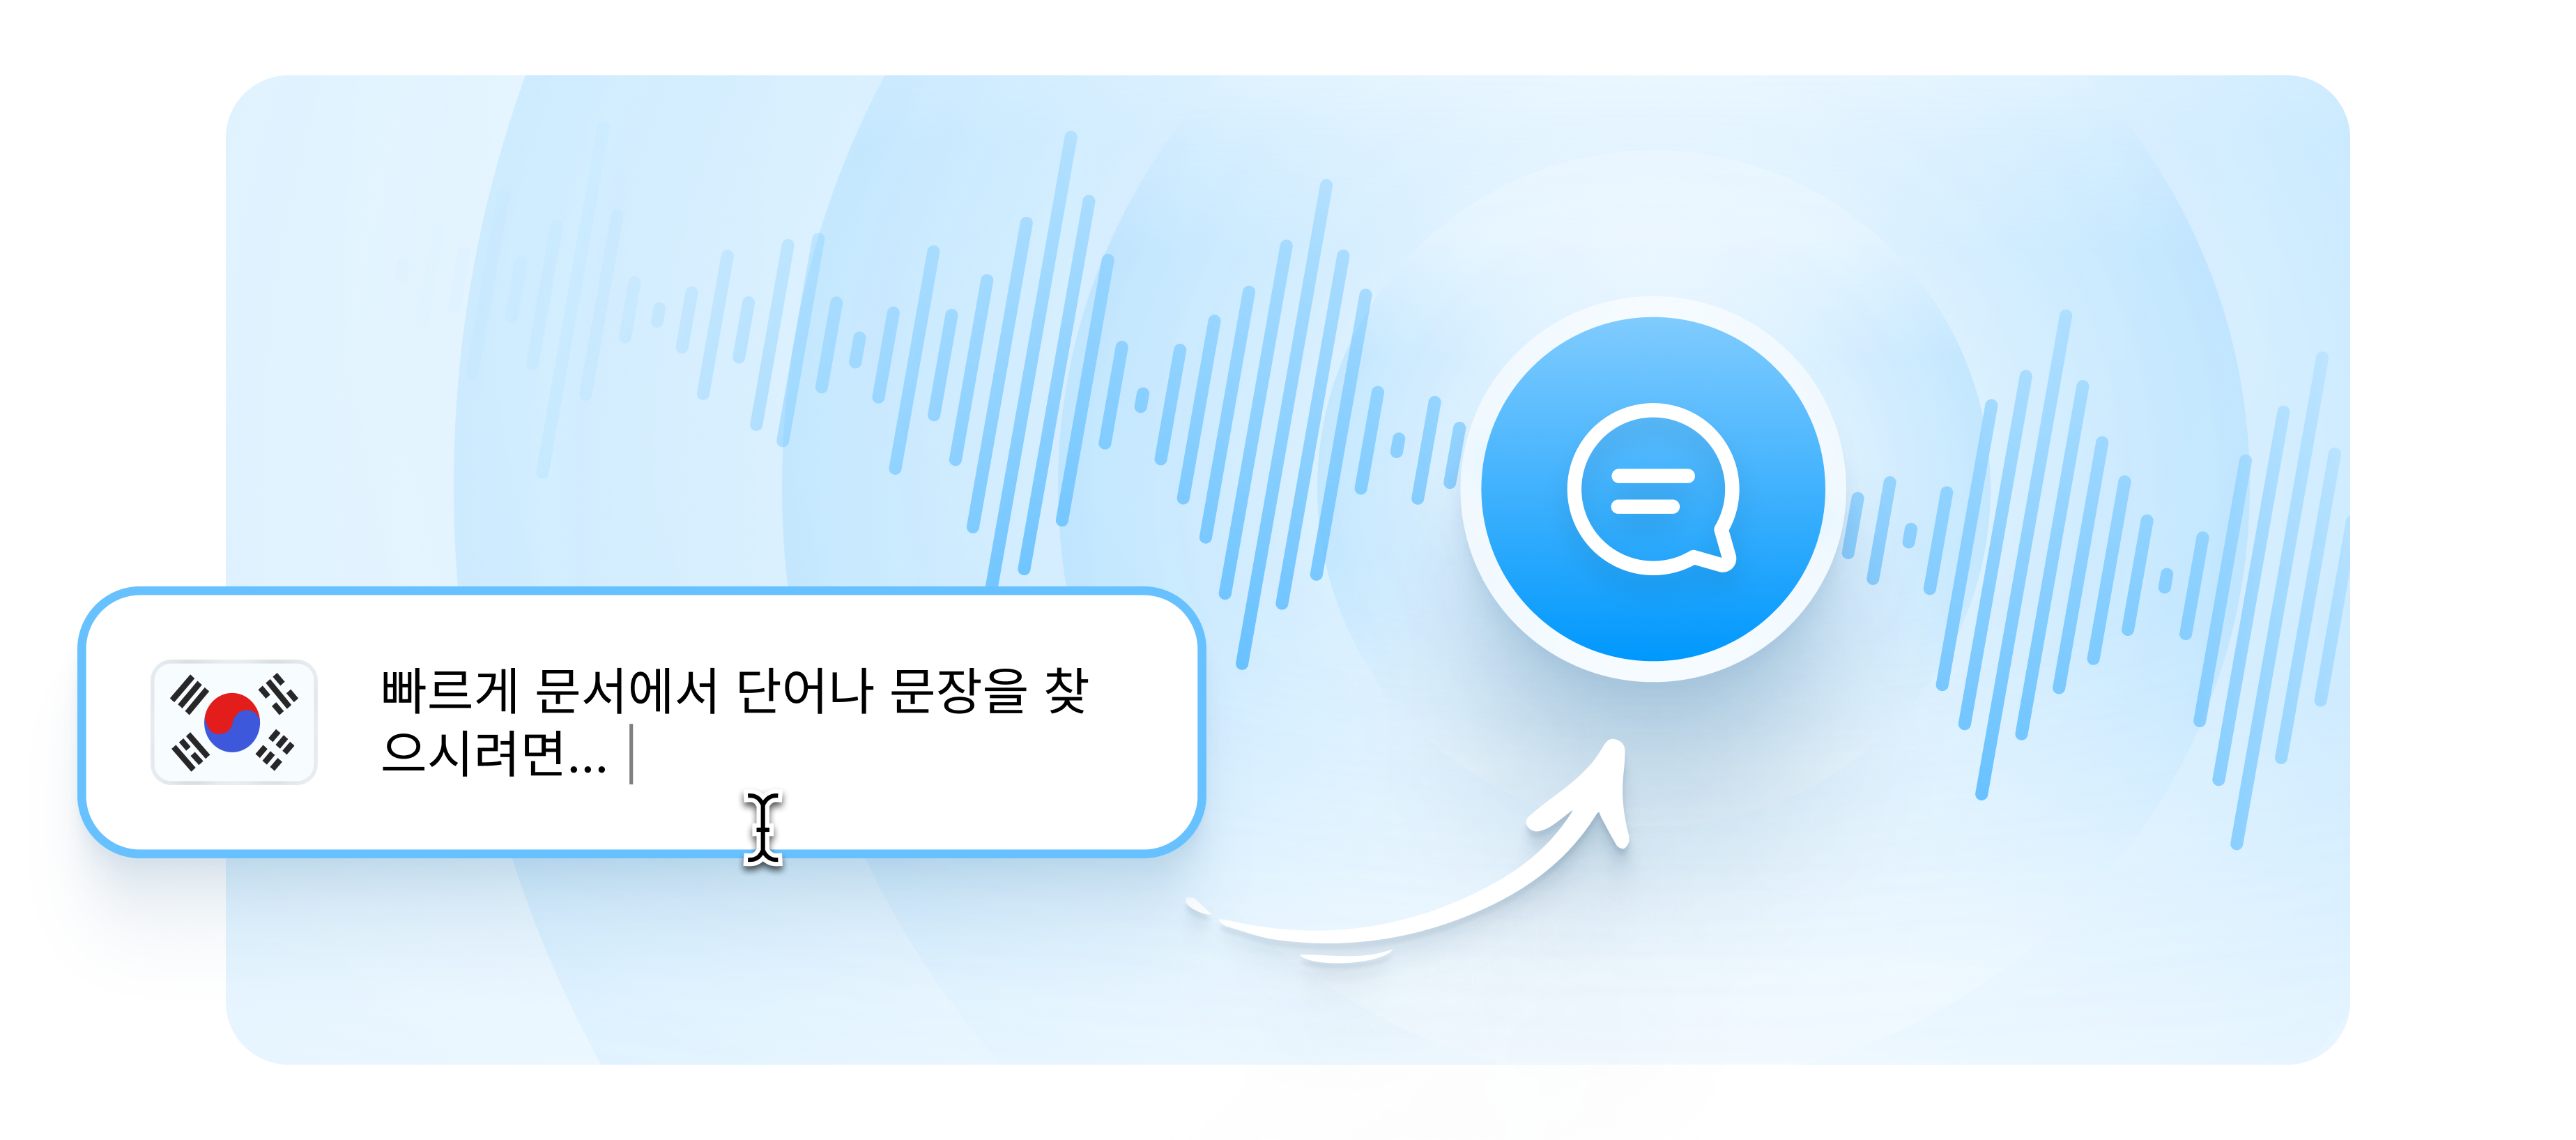 Korean text to speech: Bạn muốn hoàn thiện kĩ năng tiếng Hàn của mình? Korean text to speech là giải pháp tuyệt vời dành cho bạn. Với giọng đọc trôi chảy, tự nhiên, bạn có thể luyện nghe, phát âm và nâng cao trình độ của mình một cách thú vị. Cập nhật thường xuyên để sử dụng các tính năng mới và nhanh chóng trở thành chuyên gia tiếng Hàn.